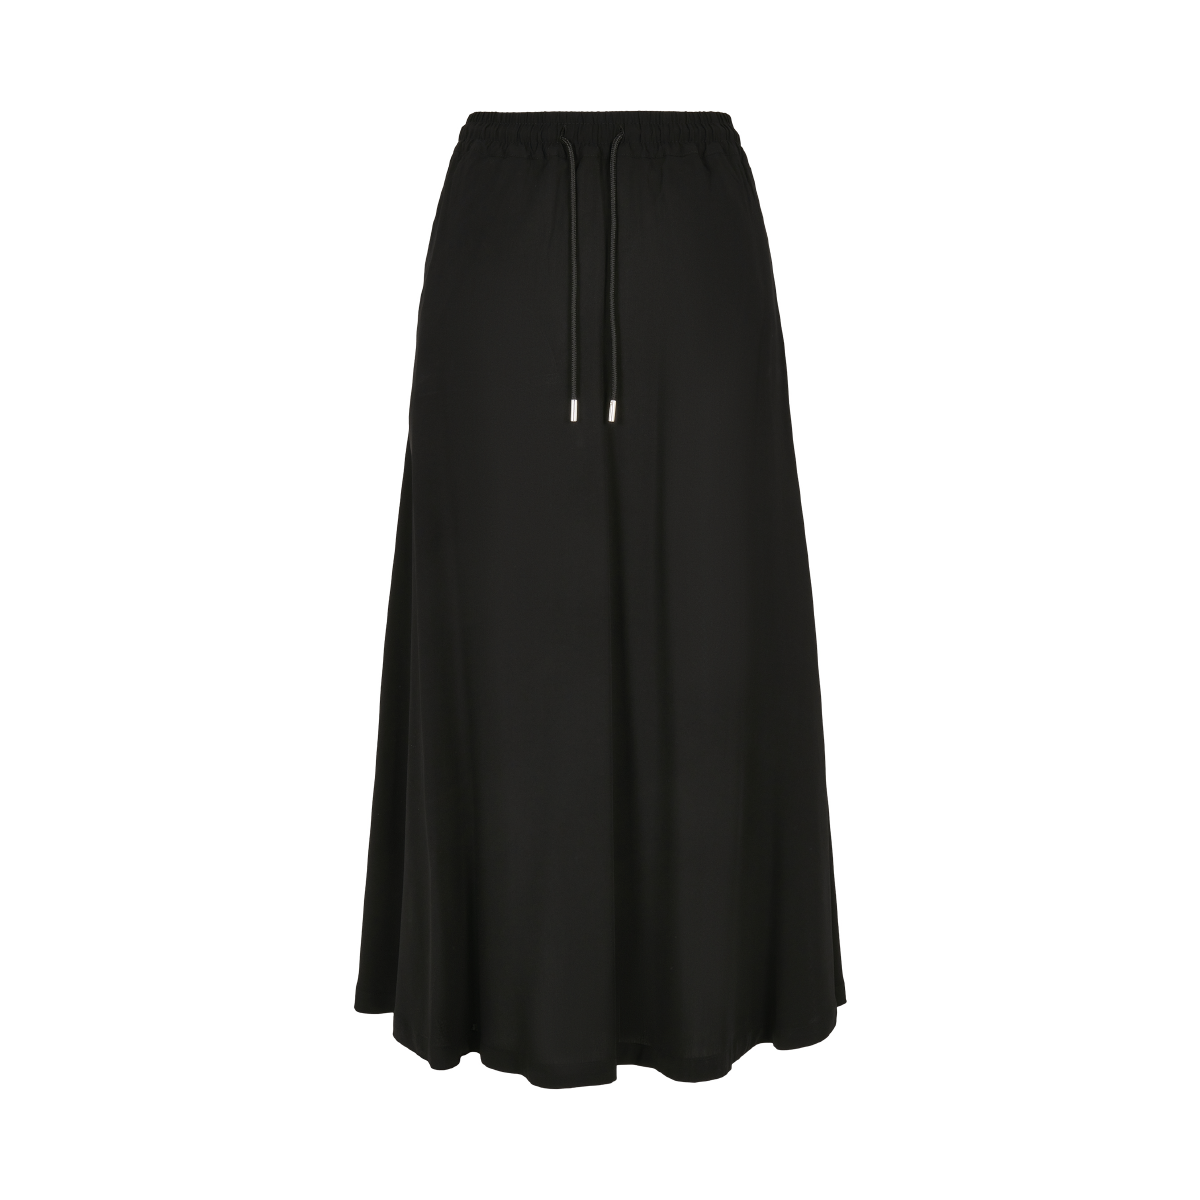 Black long Skirt